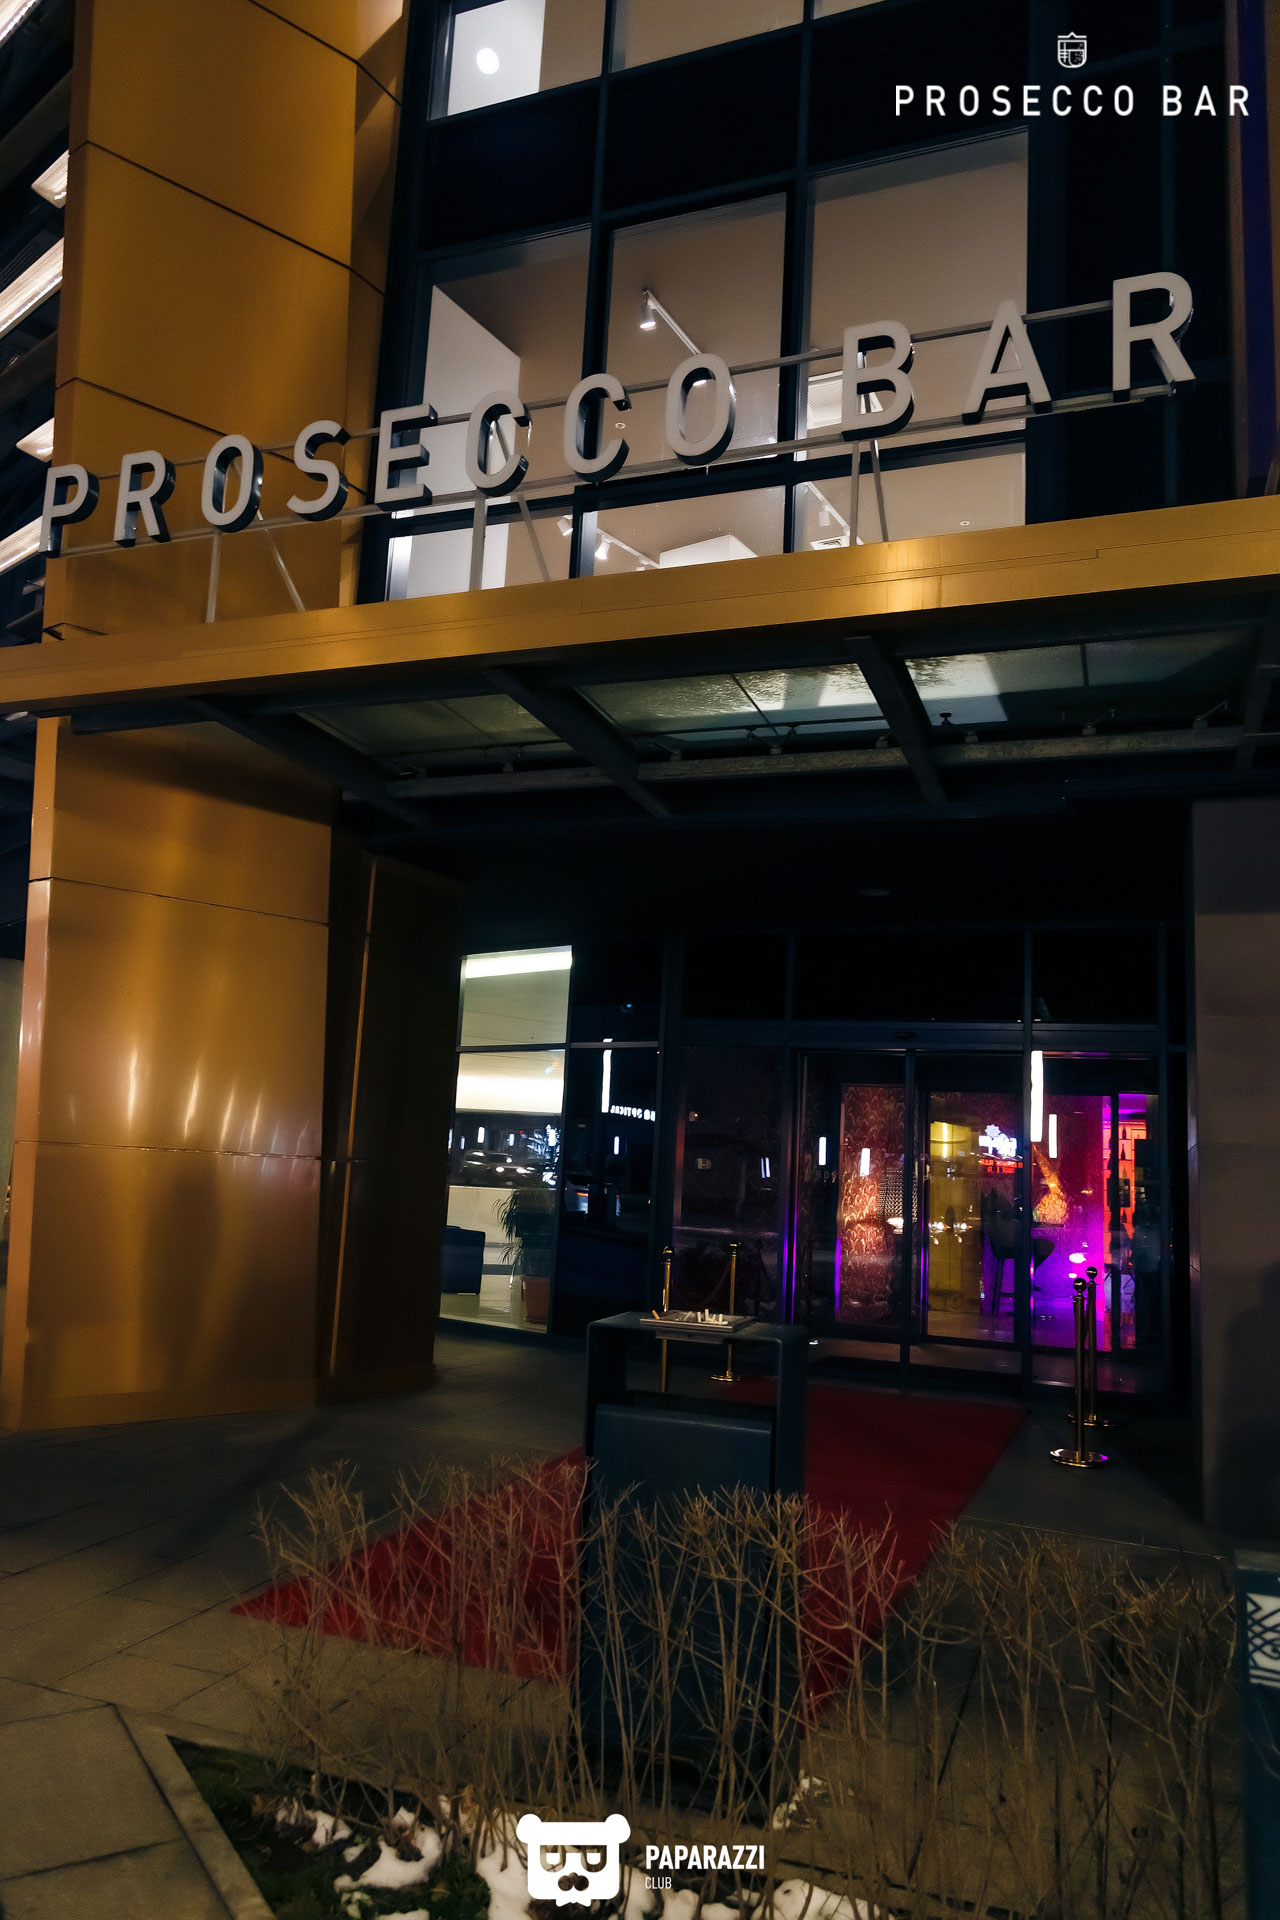 "Prosecco bar"